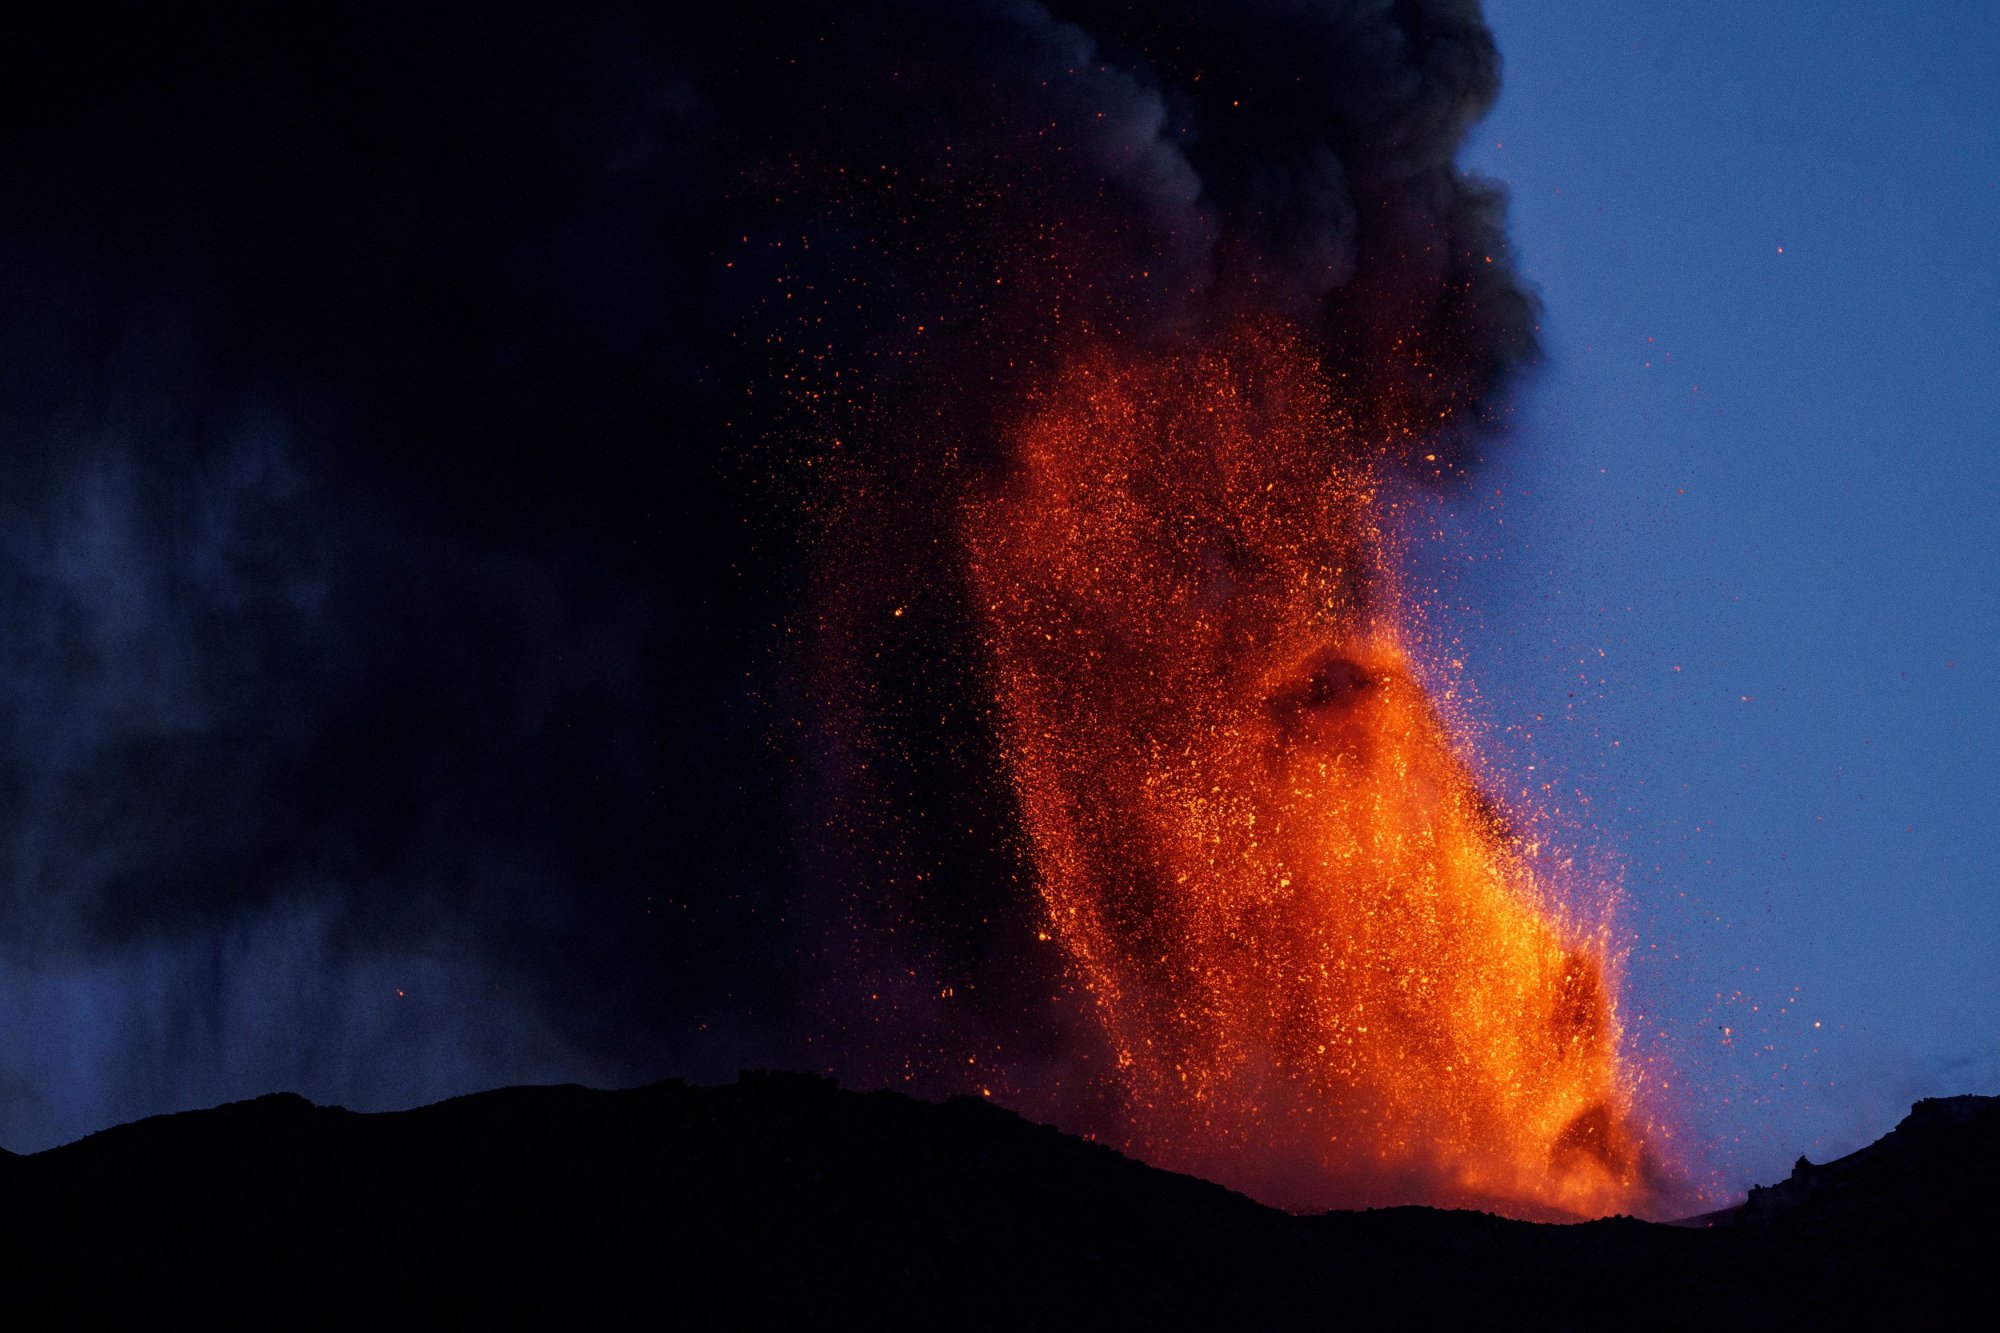 Ιταλία: Συγκλονιστικά πλάνα από τα ηφαίστεια Έτνα και Στρόμπολι να εκτοξεύουν τέφρα και λάβα